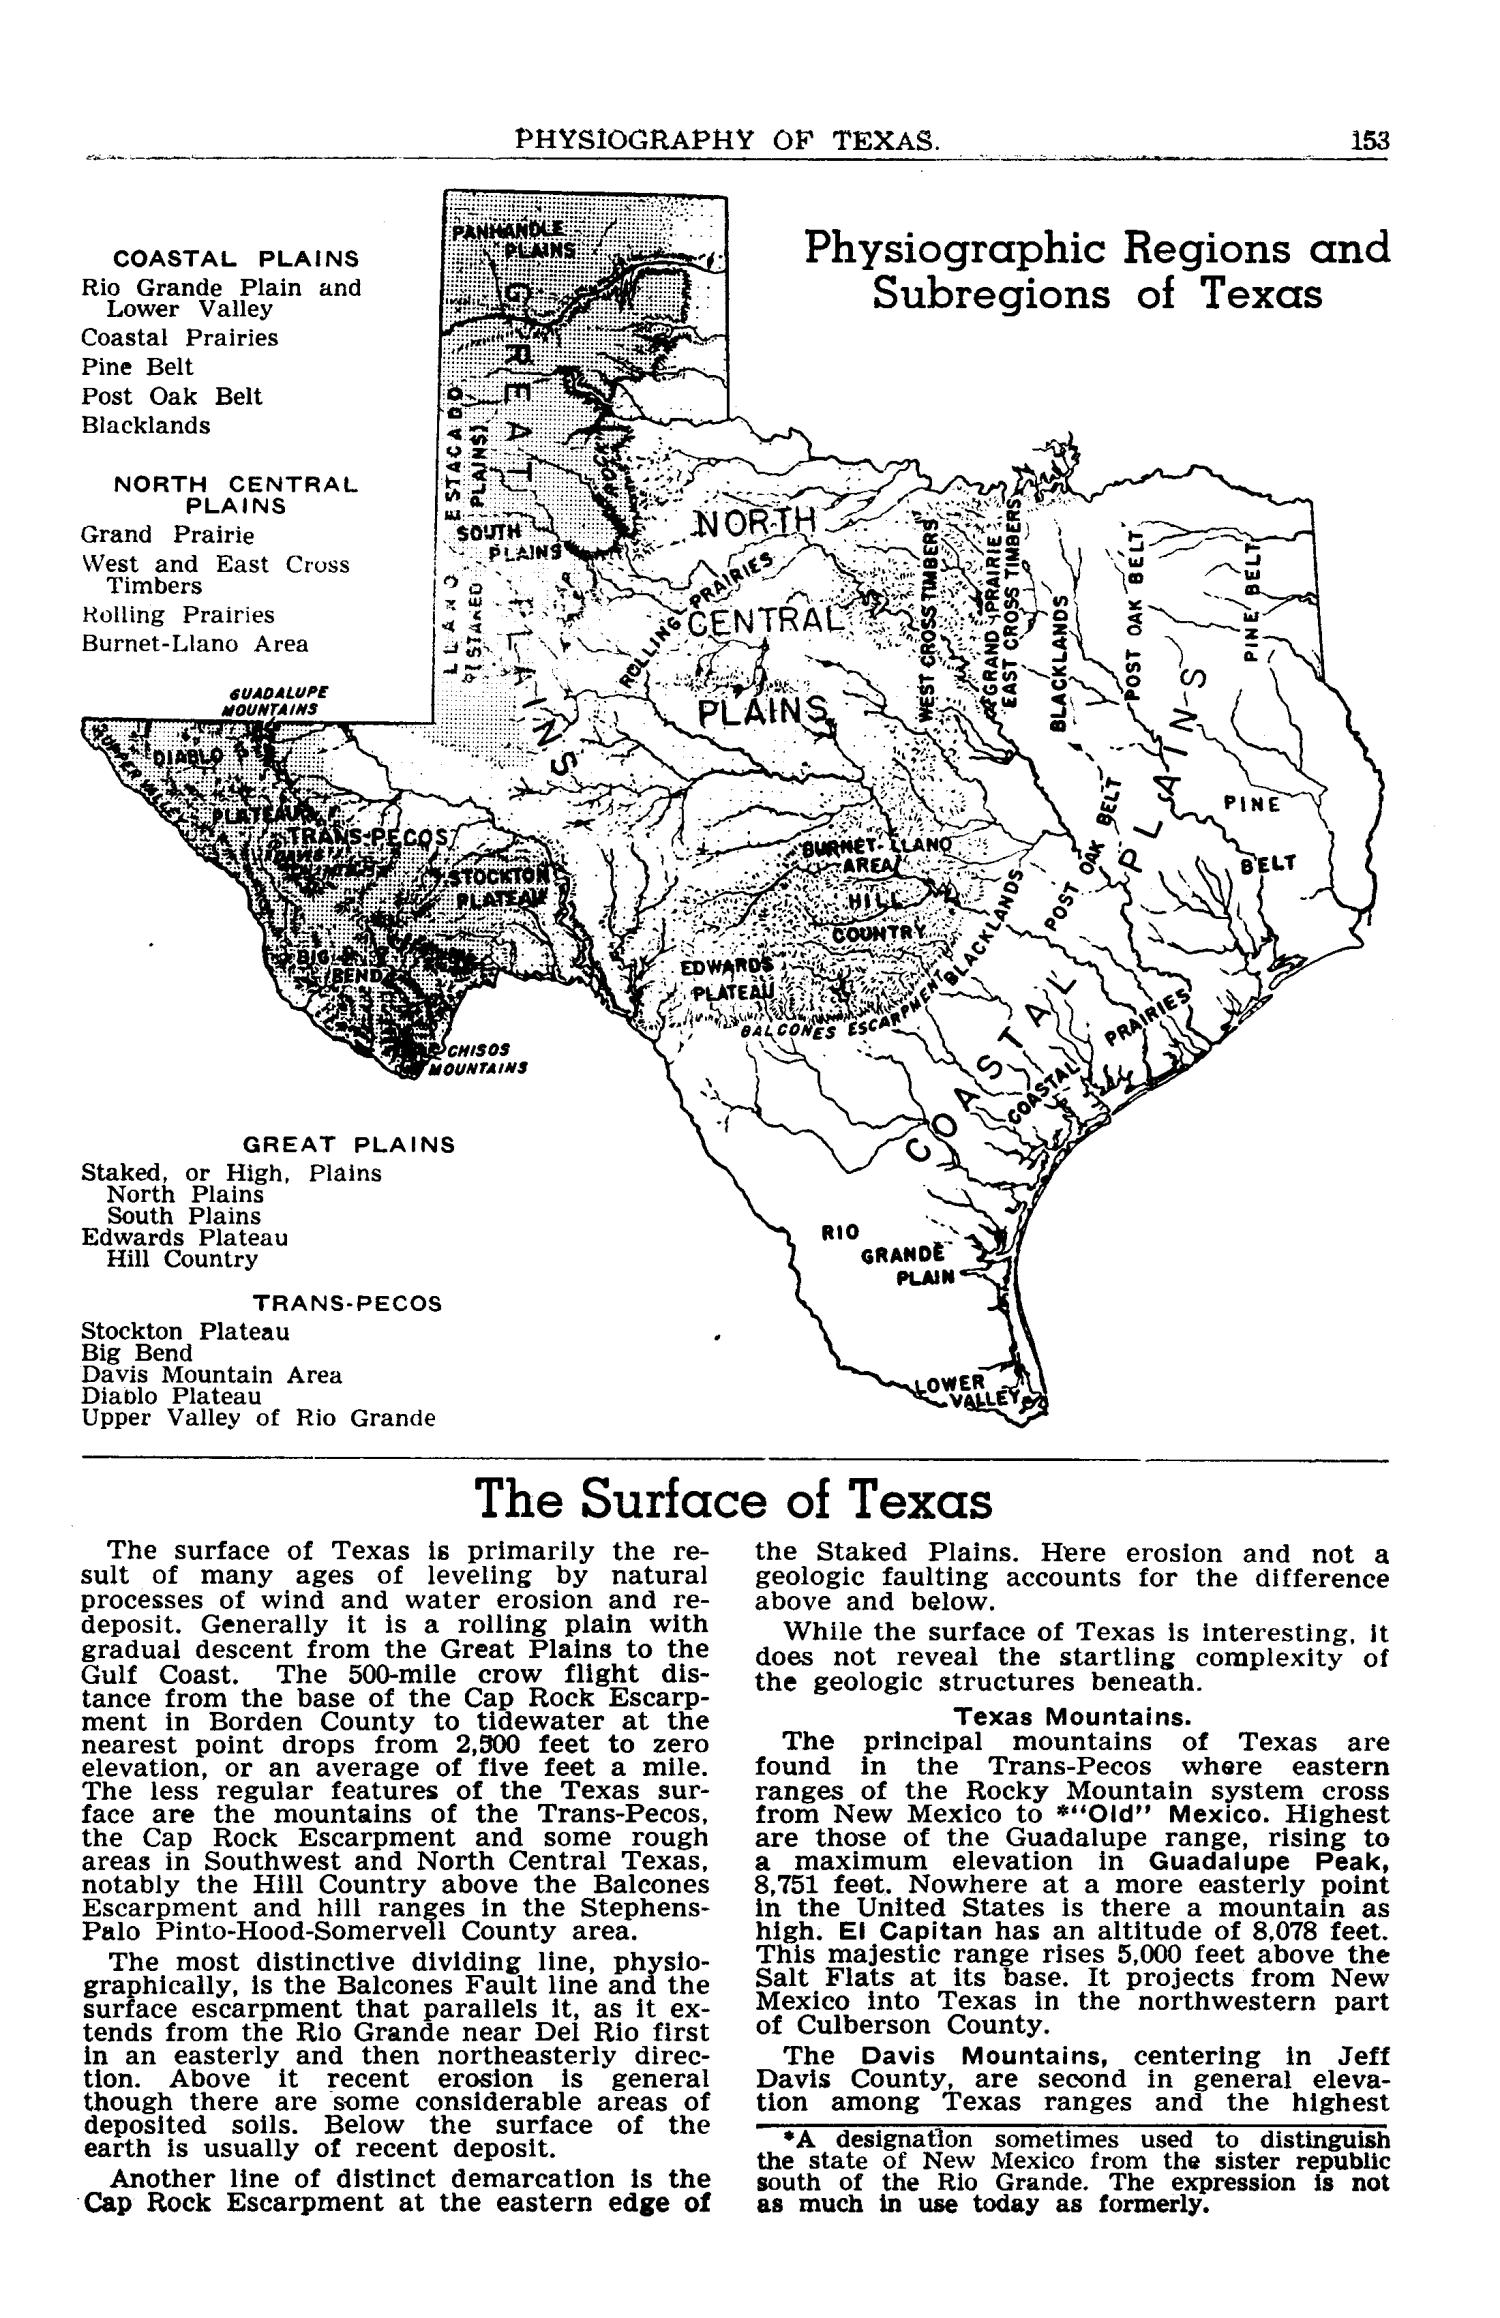 Texas Almanac, 1949-1950
                                                
                                                    153
                                                